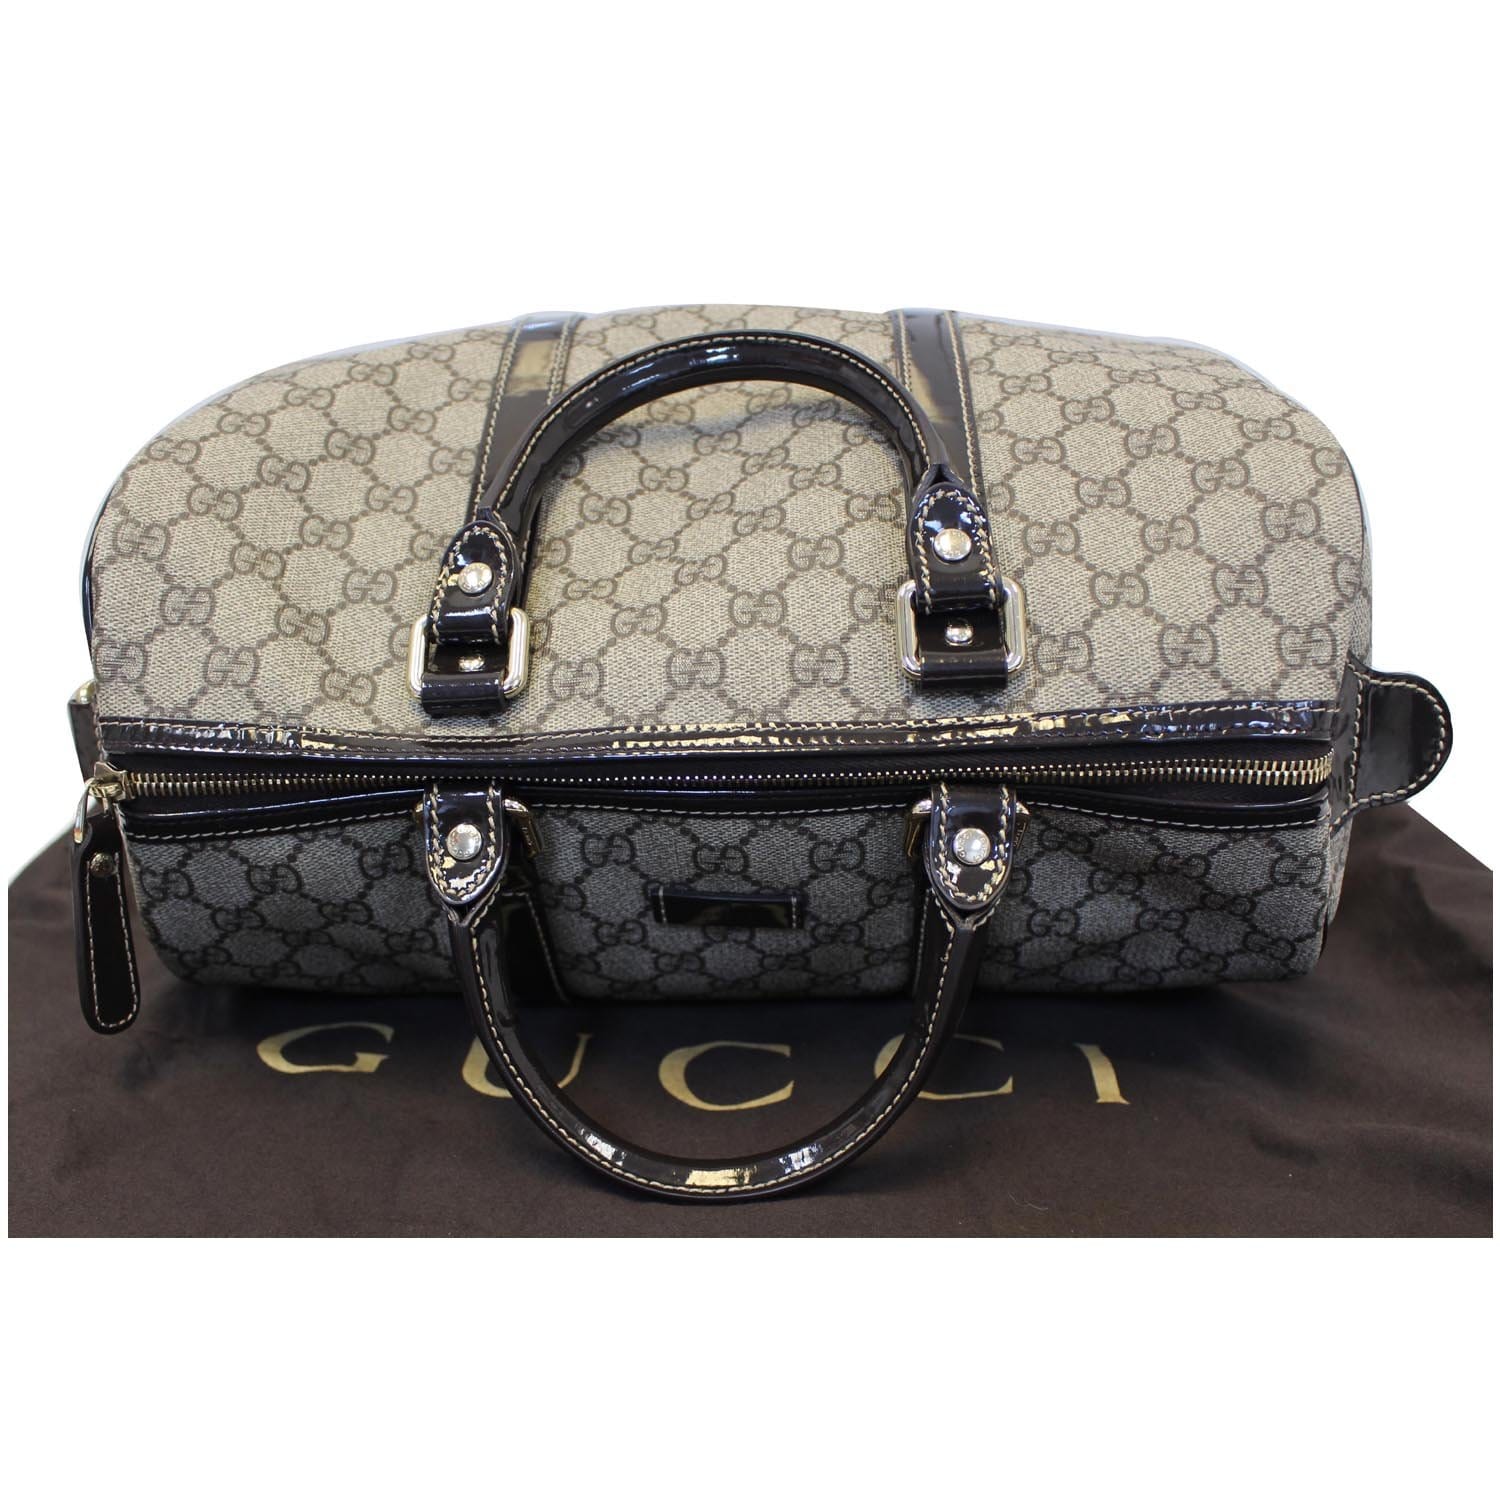 Handbag Gucci Black in Synthetic - 36136438